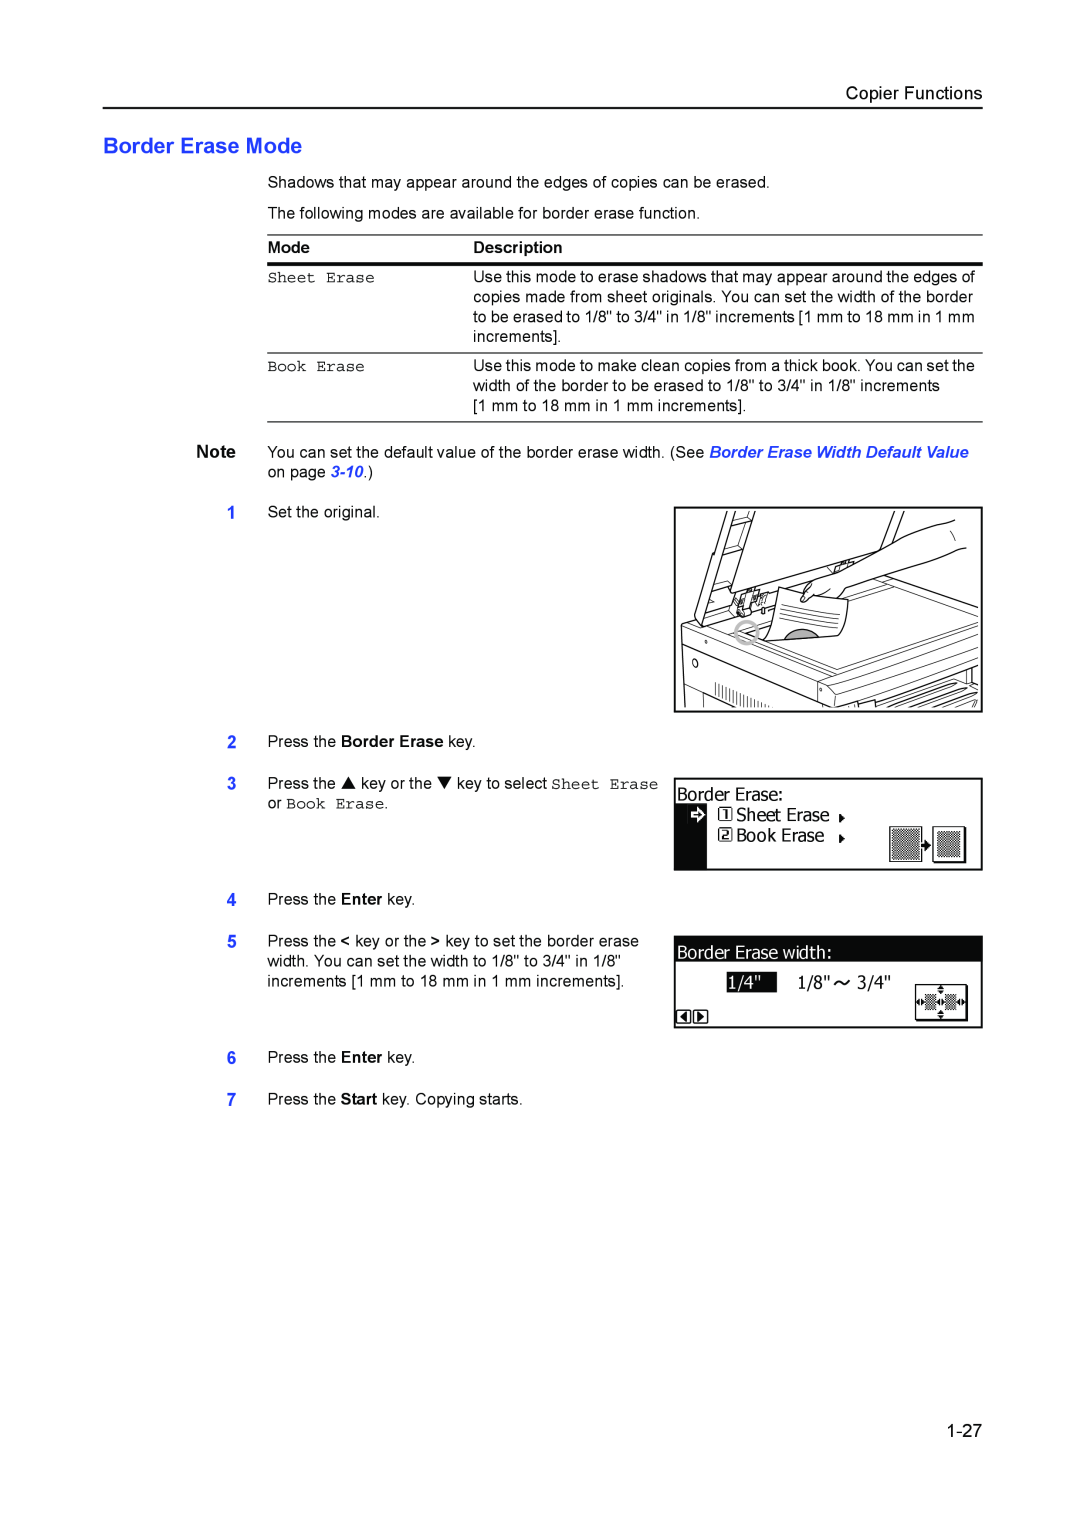 Kyocera 2550, 2050, 1650 manual Border Erase Mode, Border Erase width, 1-27, Copier Functions, Sheet Erase, Book Erase 